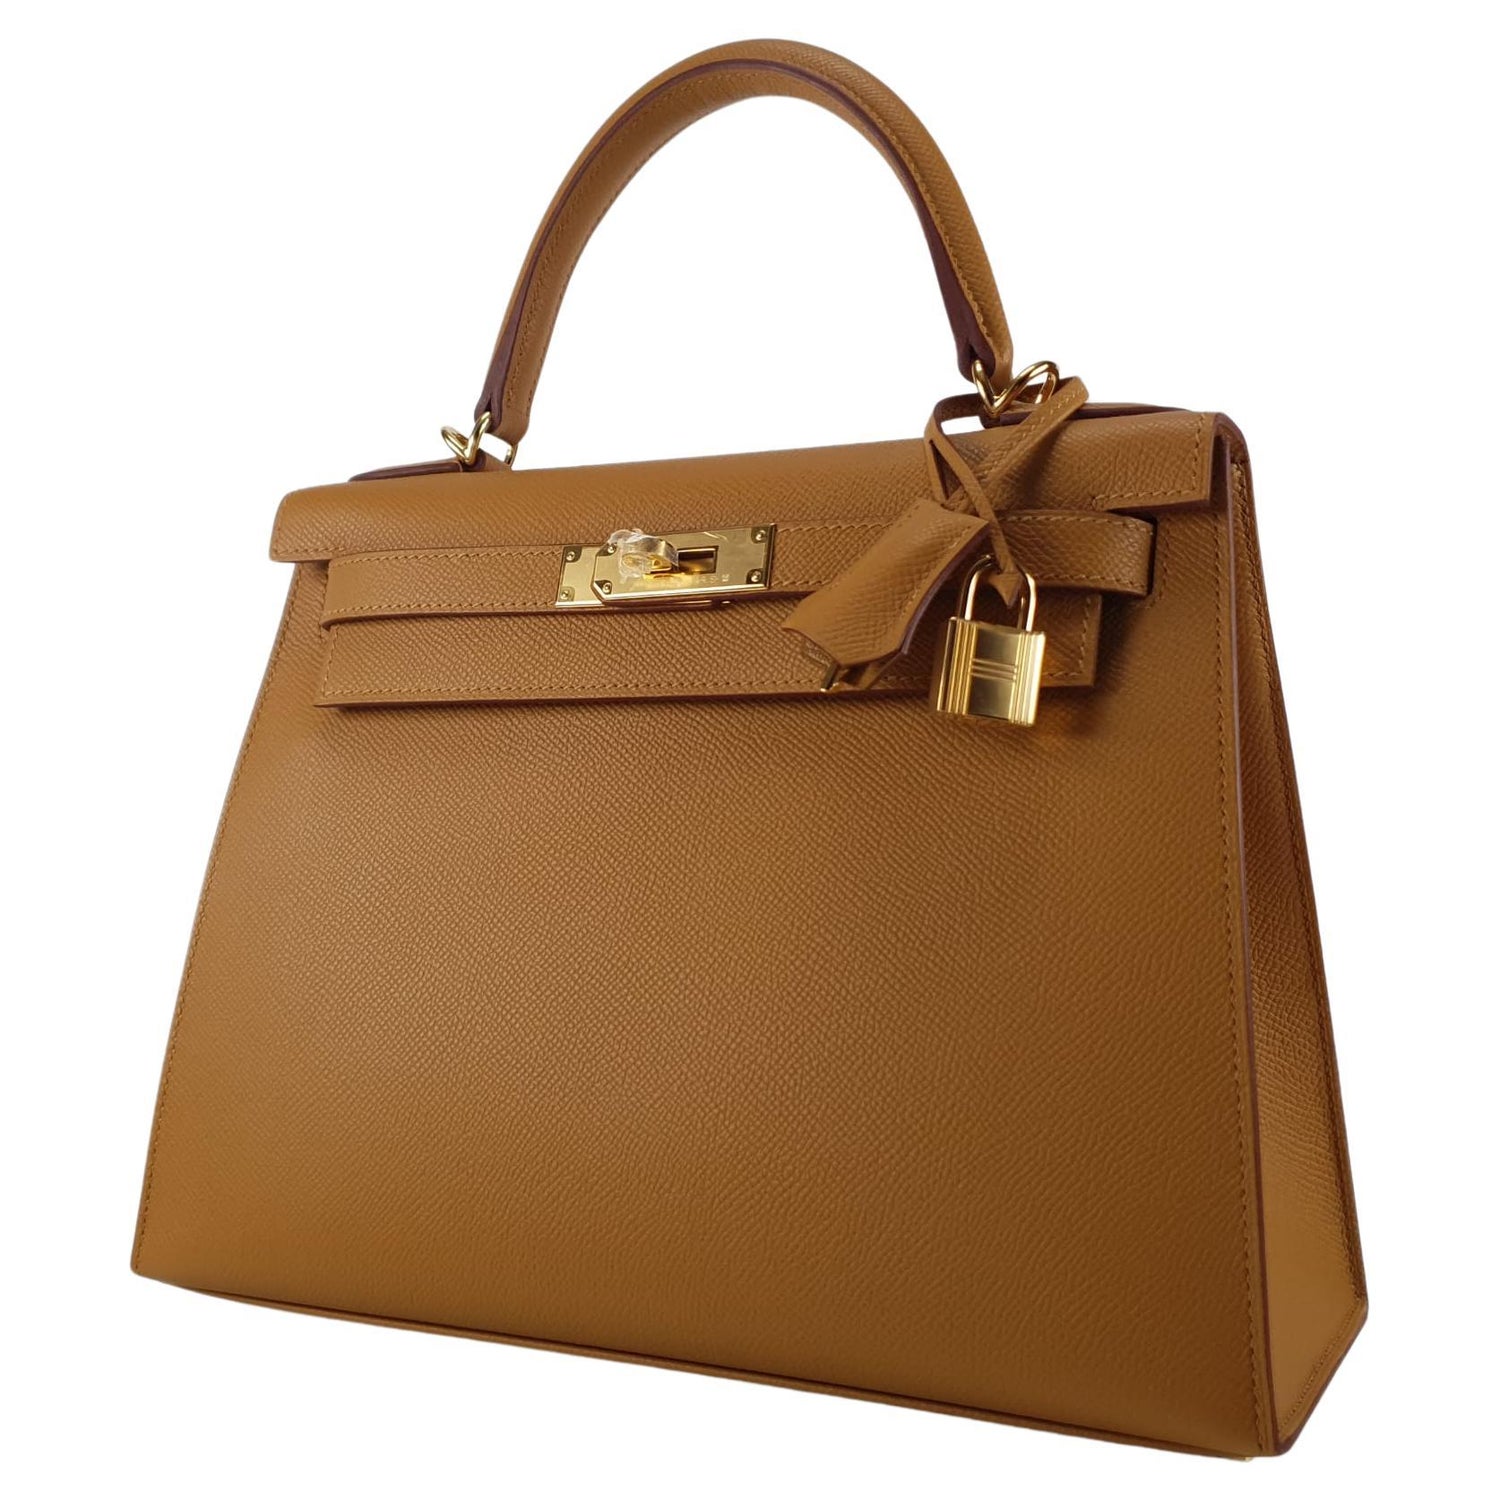 Rare* Hermes Kelly 28 Sellier Handbag Gris Meyer Epsom Leather